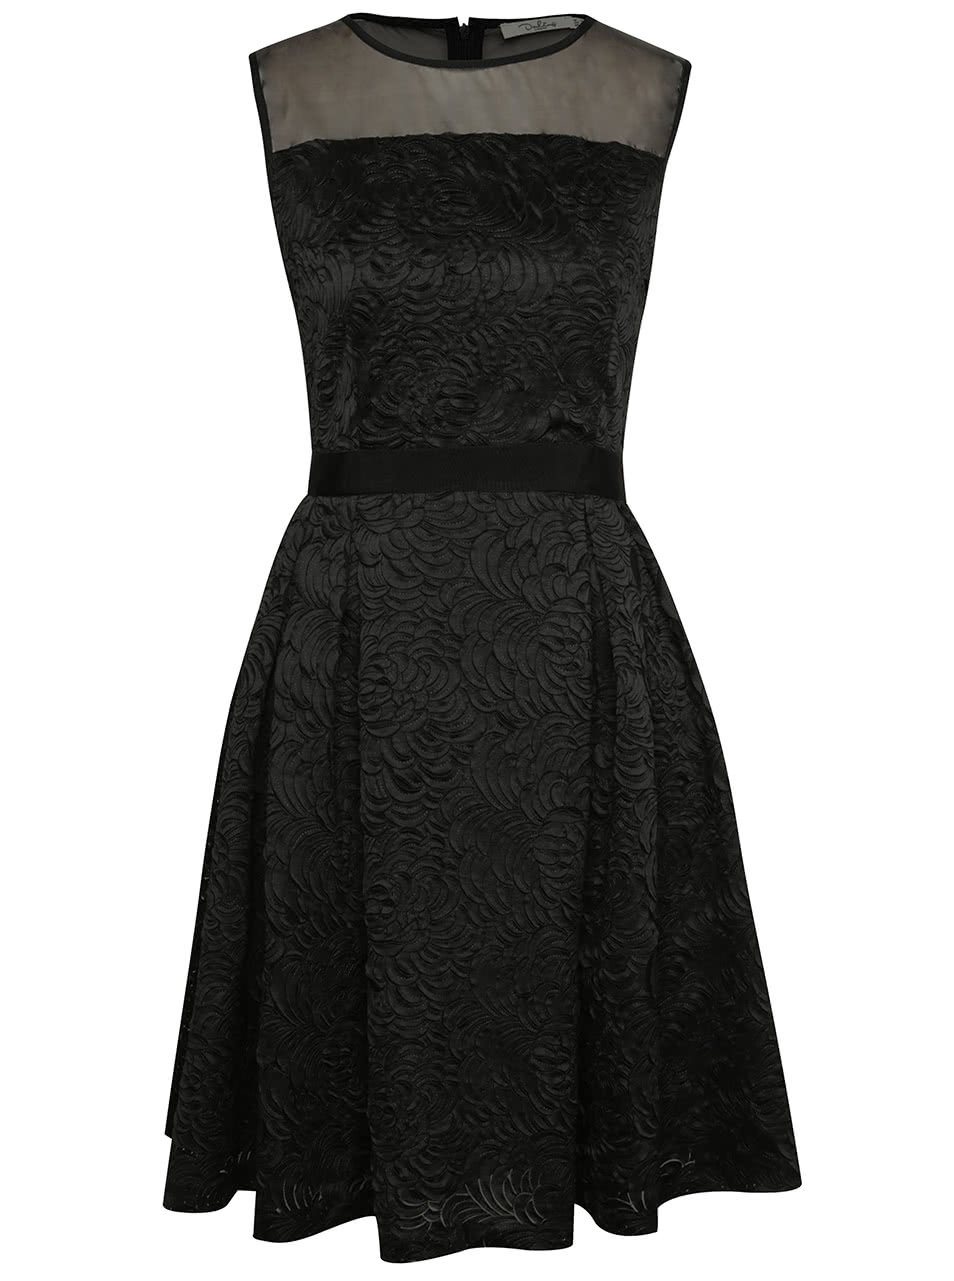 Černé vzorované šaty s průsvitnou horní částí Darling Claris